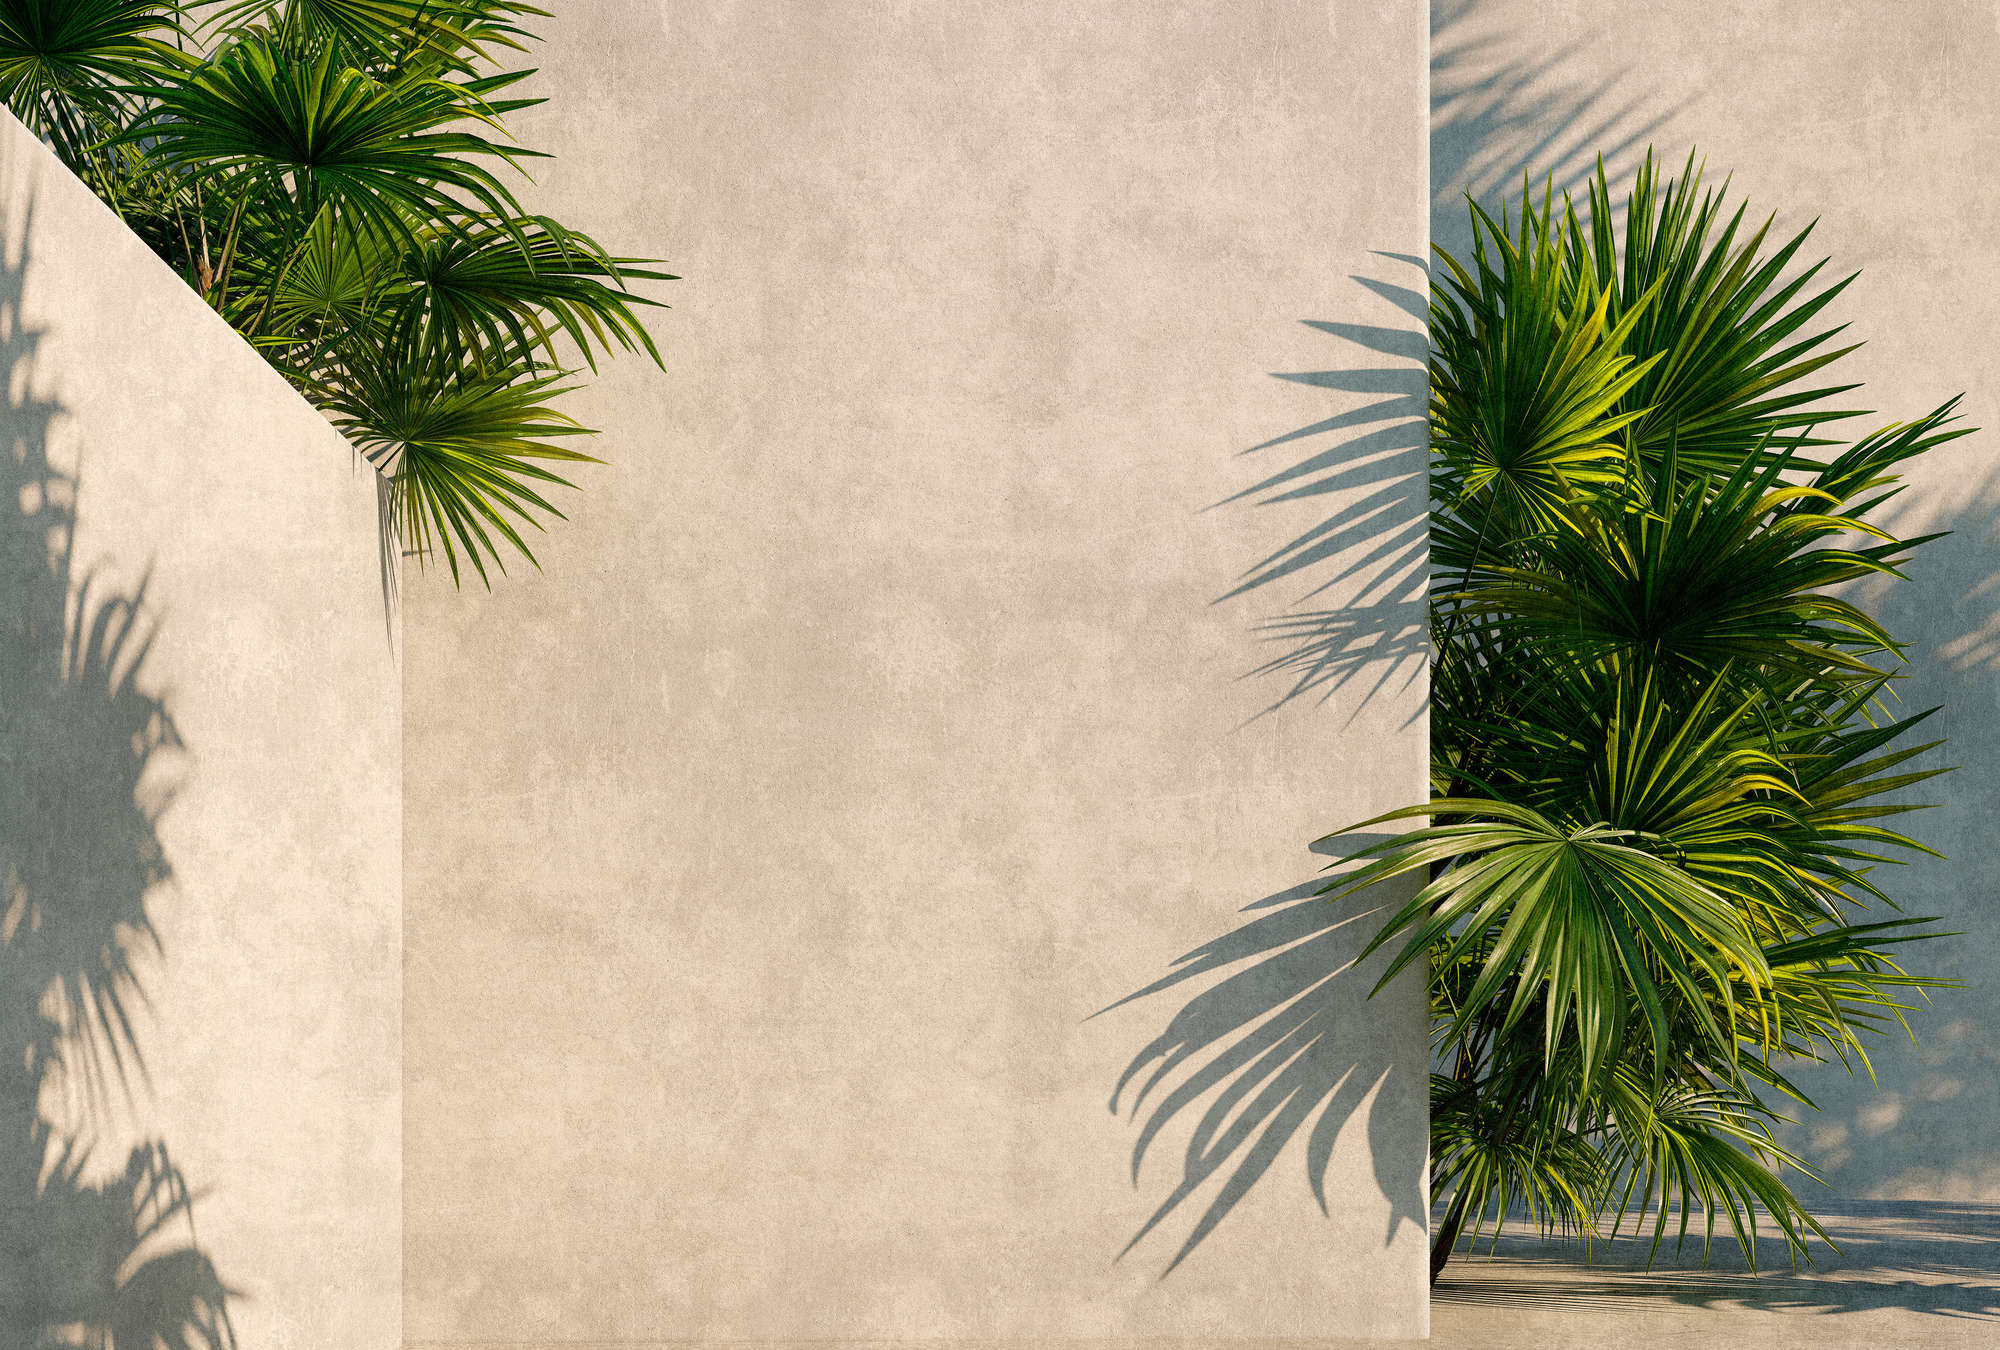             Tunis 1 - Papier peint panoramique Palmiers dans une cour intérieure avec murs en plâtre
        